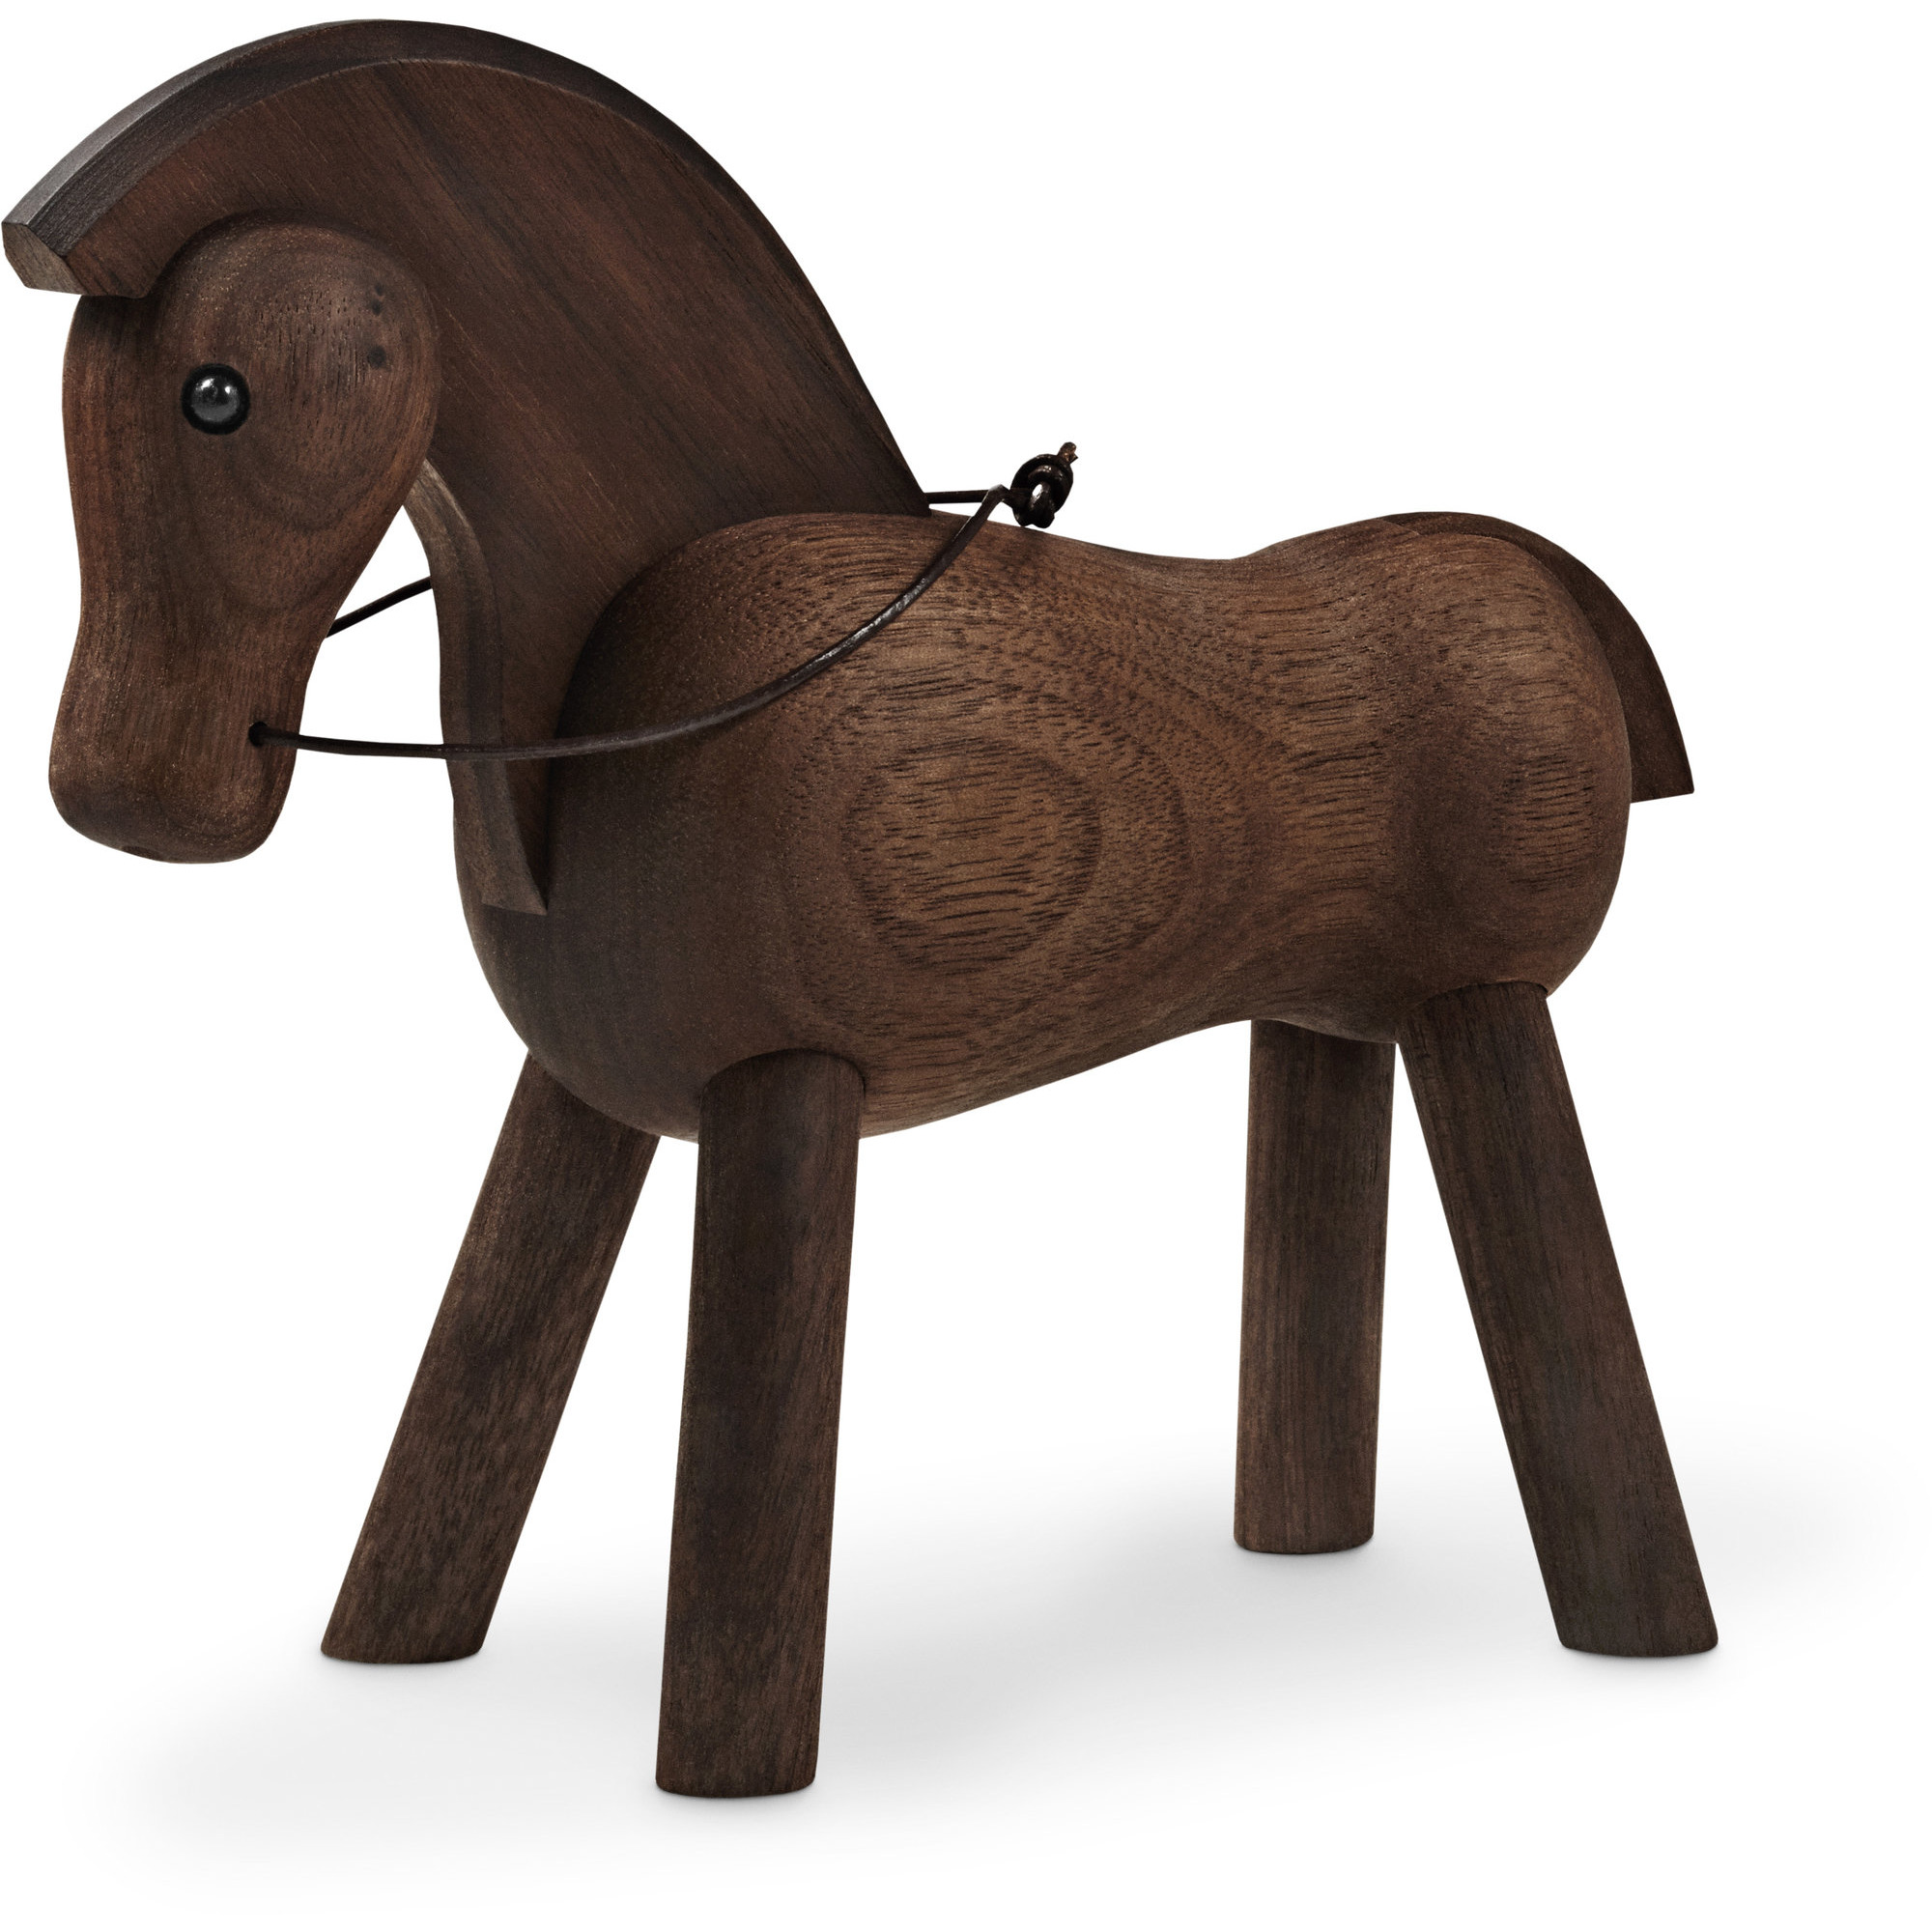 Лошадка для сада. Лошадка-качалка Wooden Horse. Лошадка-качалка woodandhorse. Деревянный конь игрушка. Деревянная лошадка качалка.